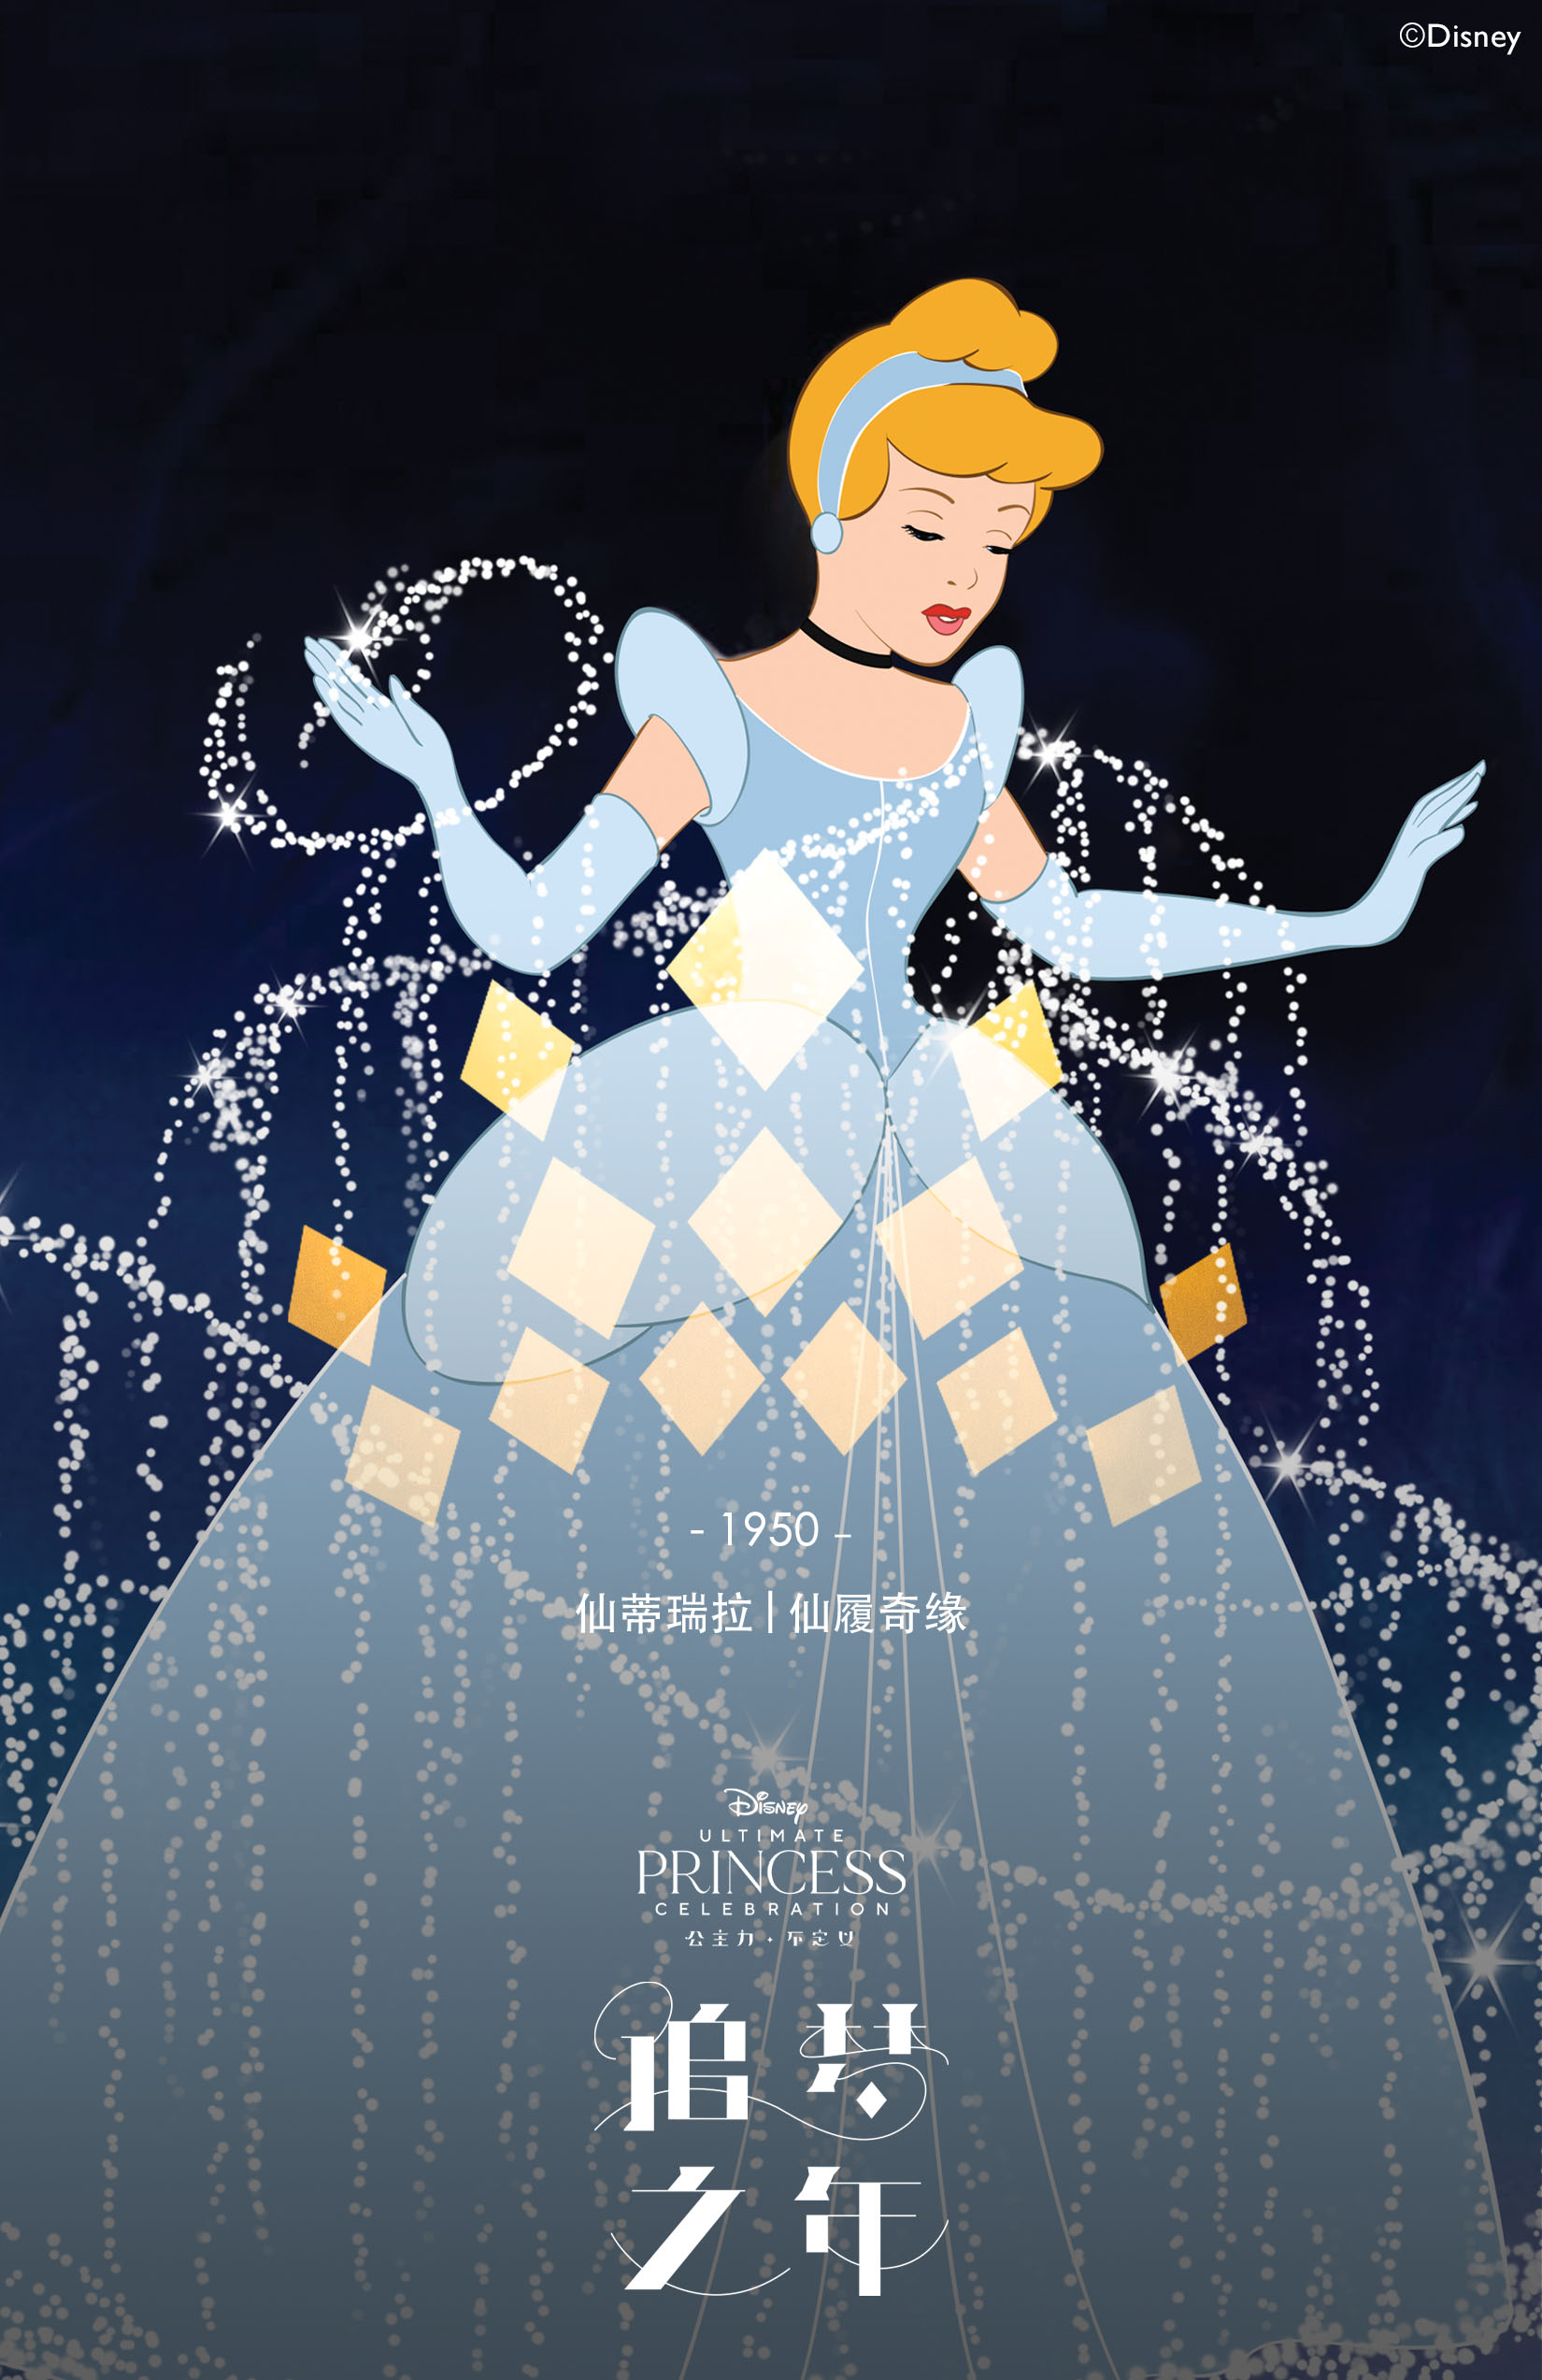 迪士尼终极公主庆典中文主题曲追梦之年今日重磅上线